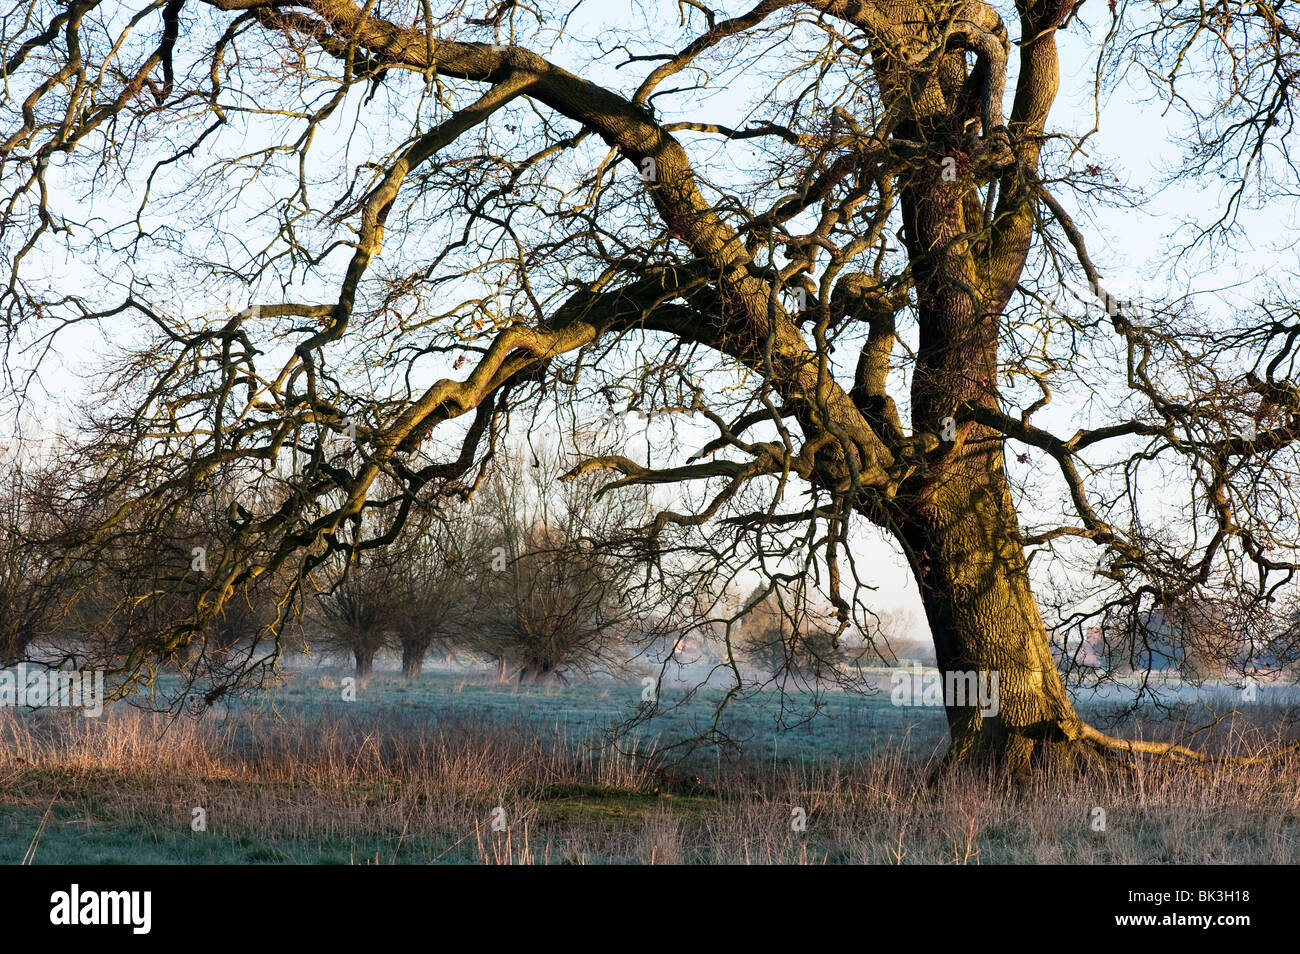 oak trees in winter